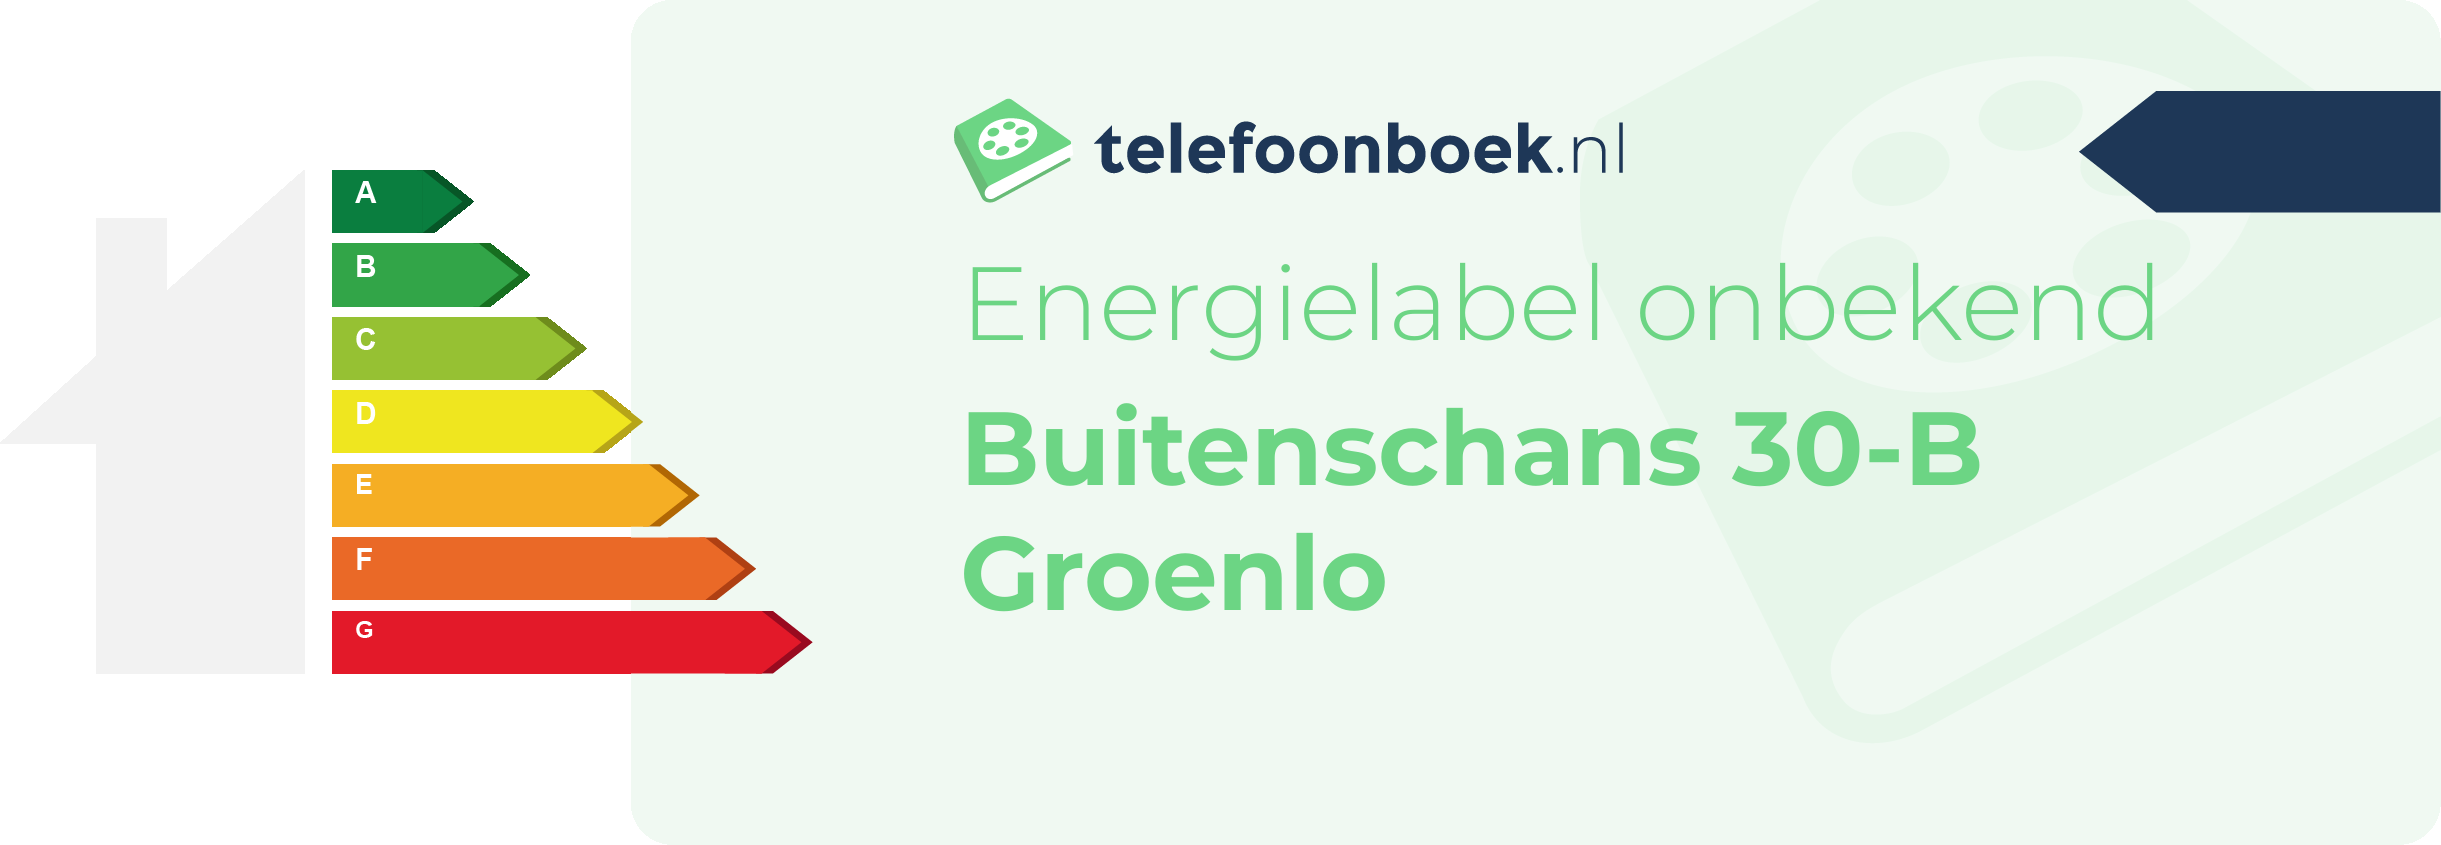 Energielabel Buitenschans 30-B Groenlo